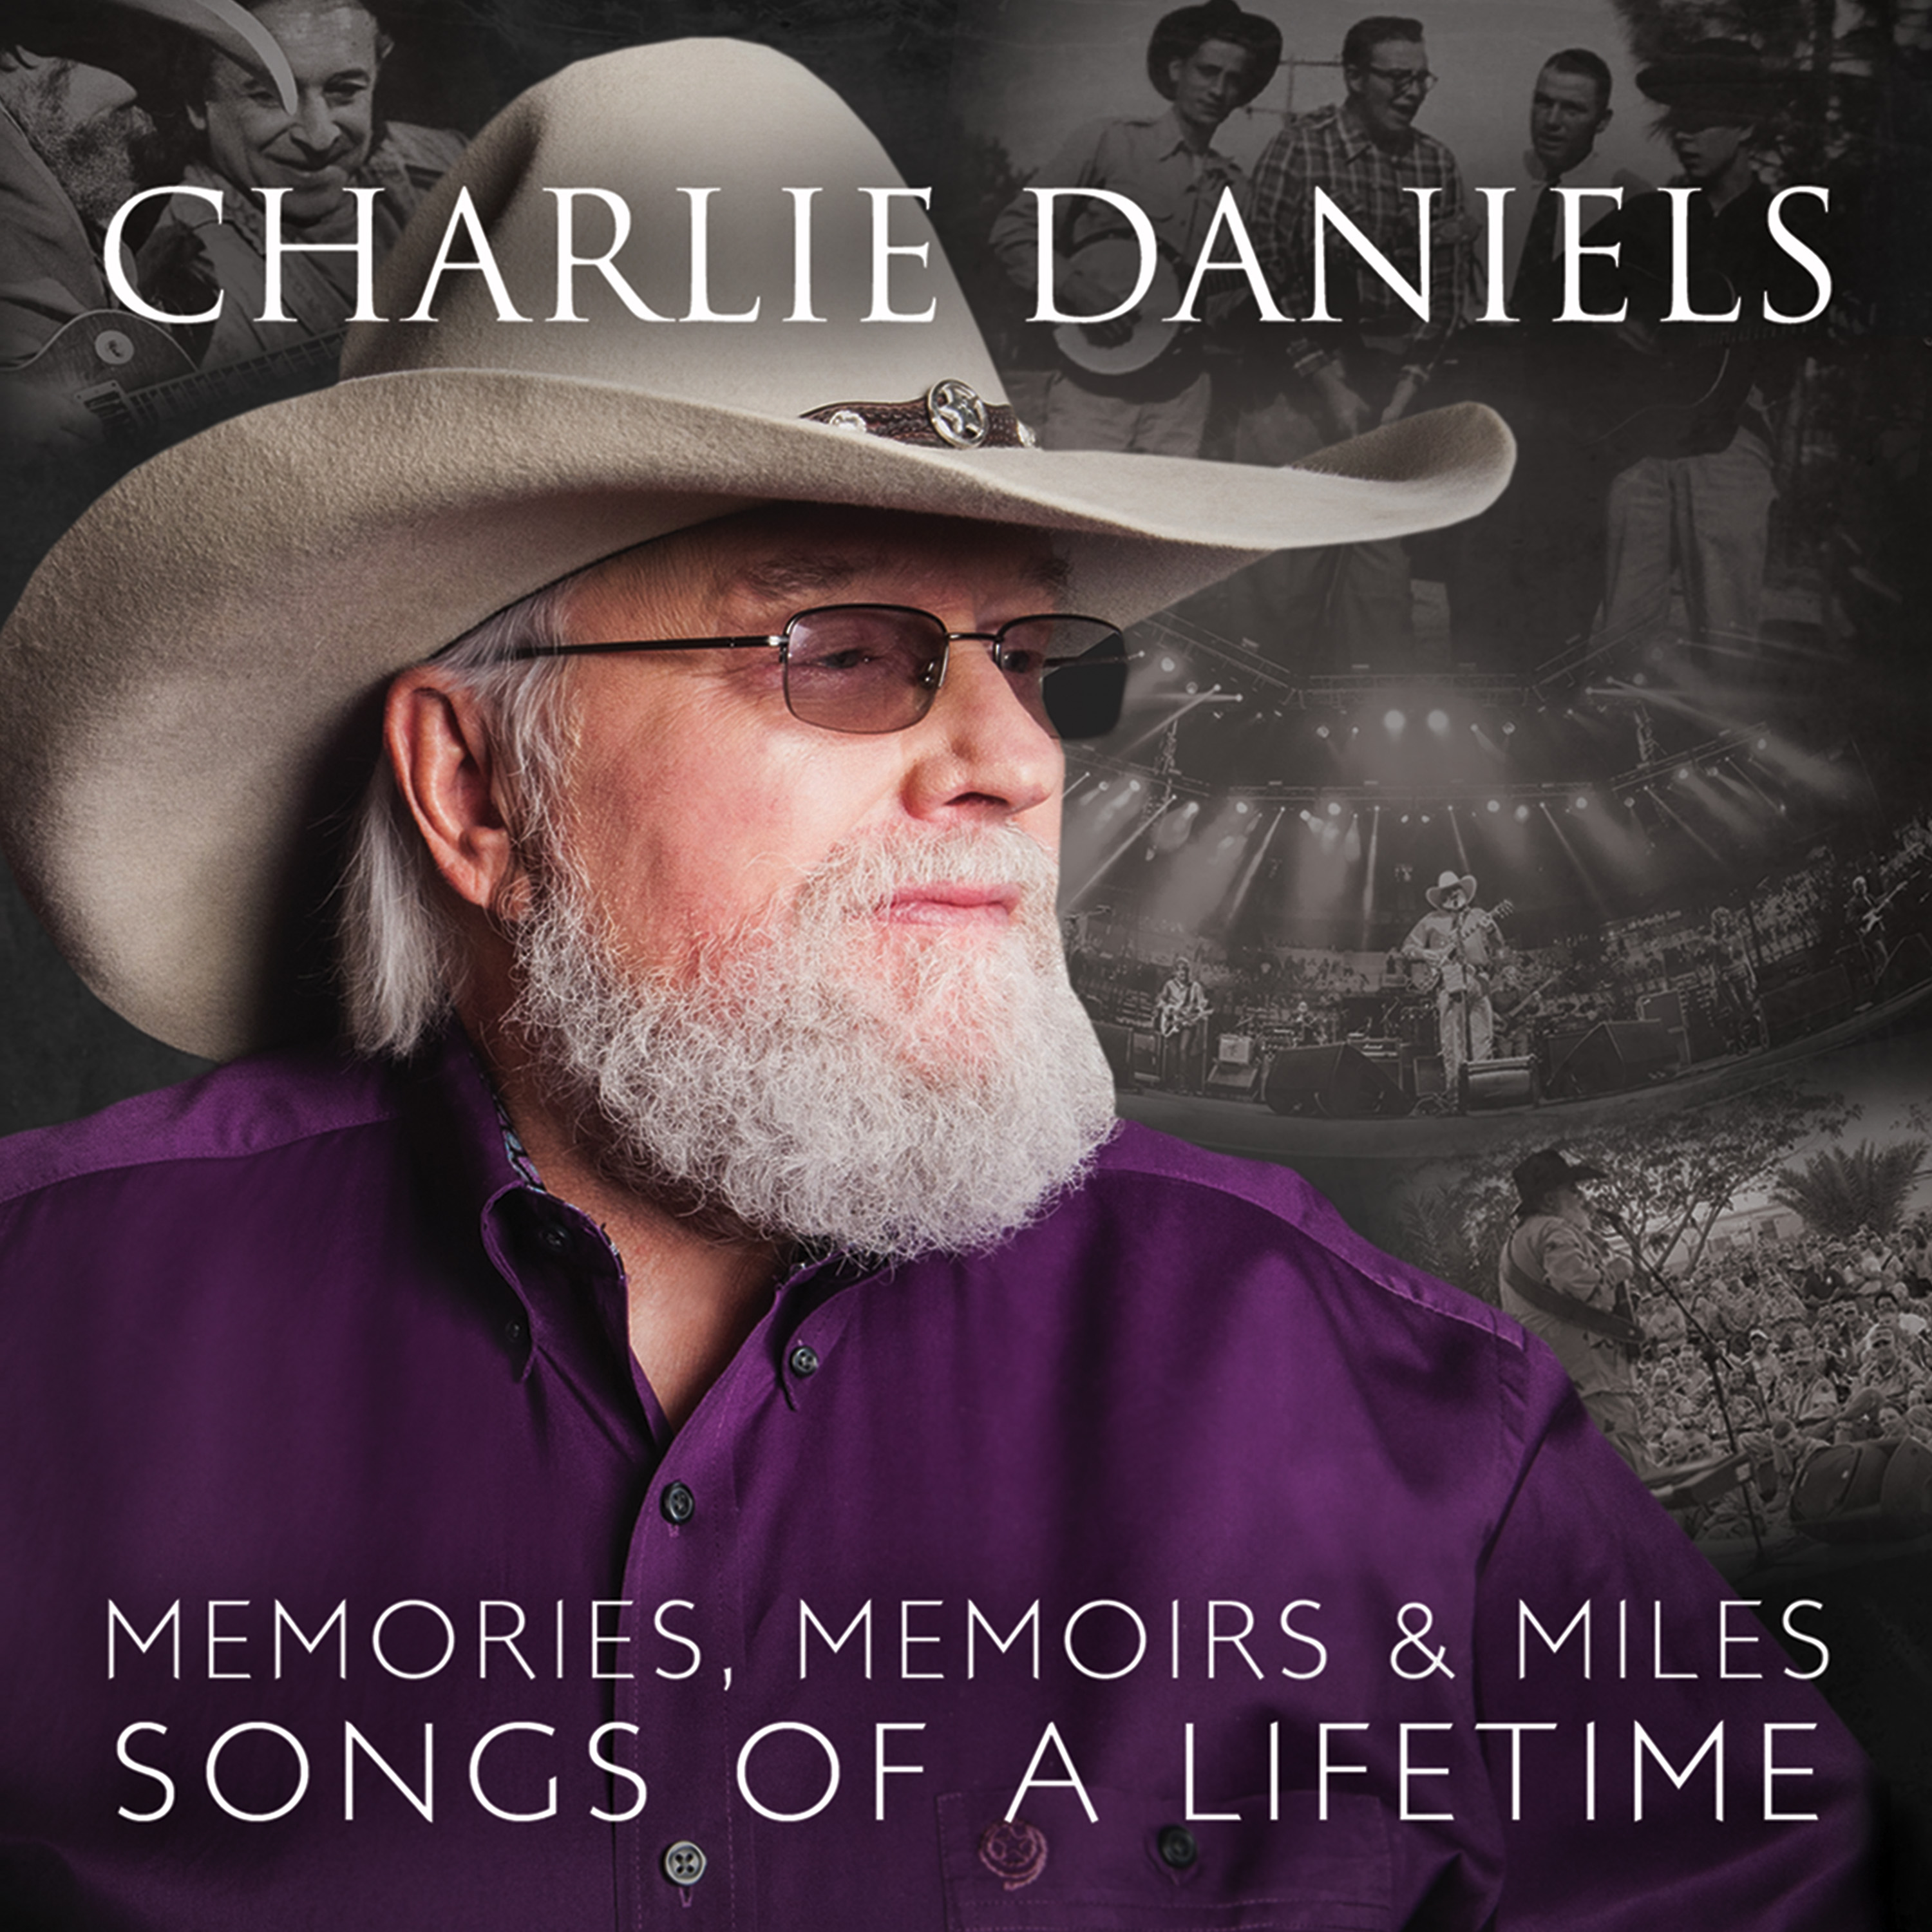 Charlie Daniels Memories, Memoirs & Miles: Songs Of A Lifetime Vinyl